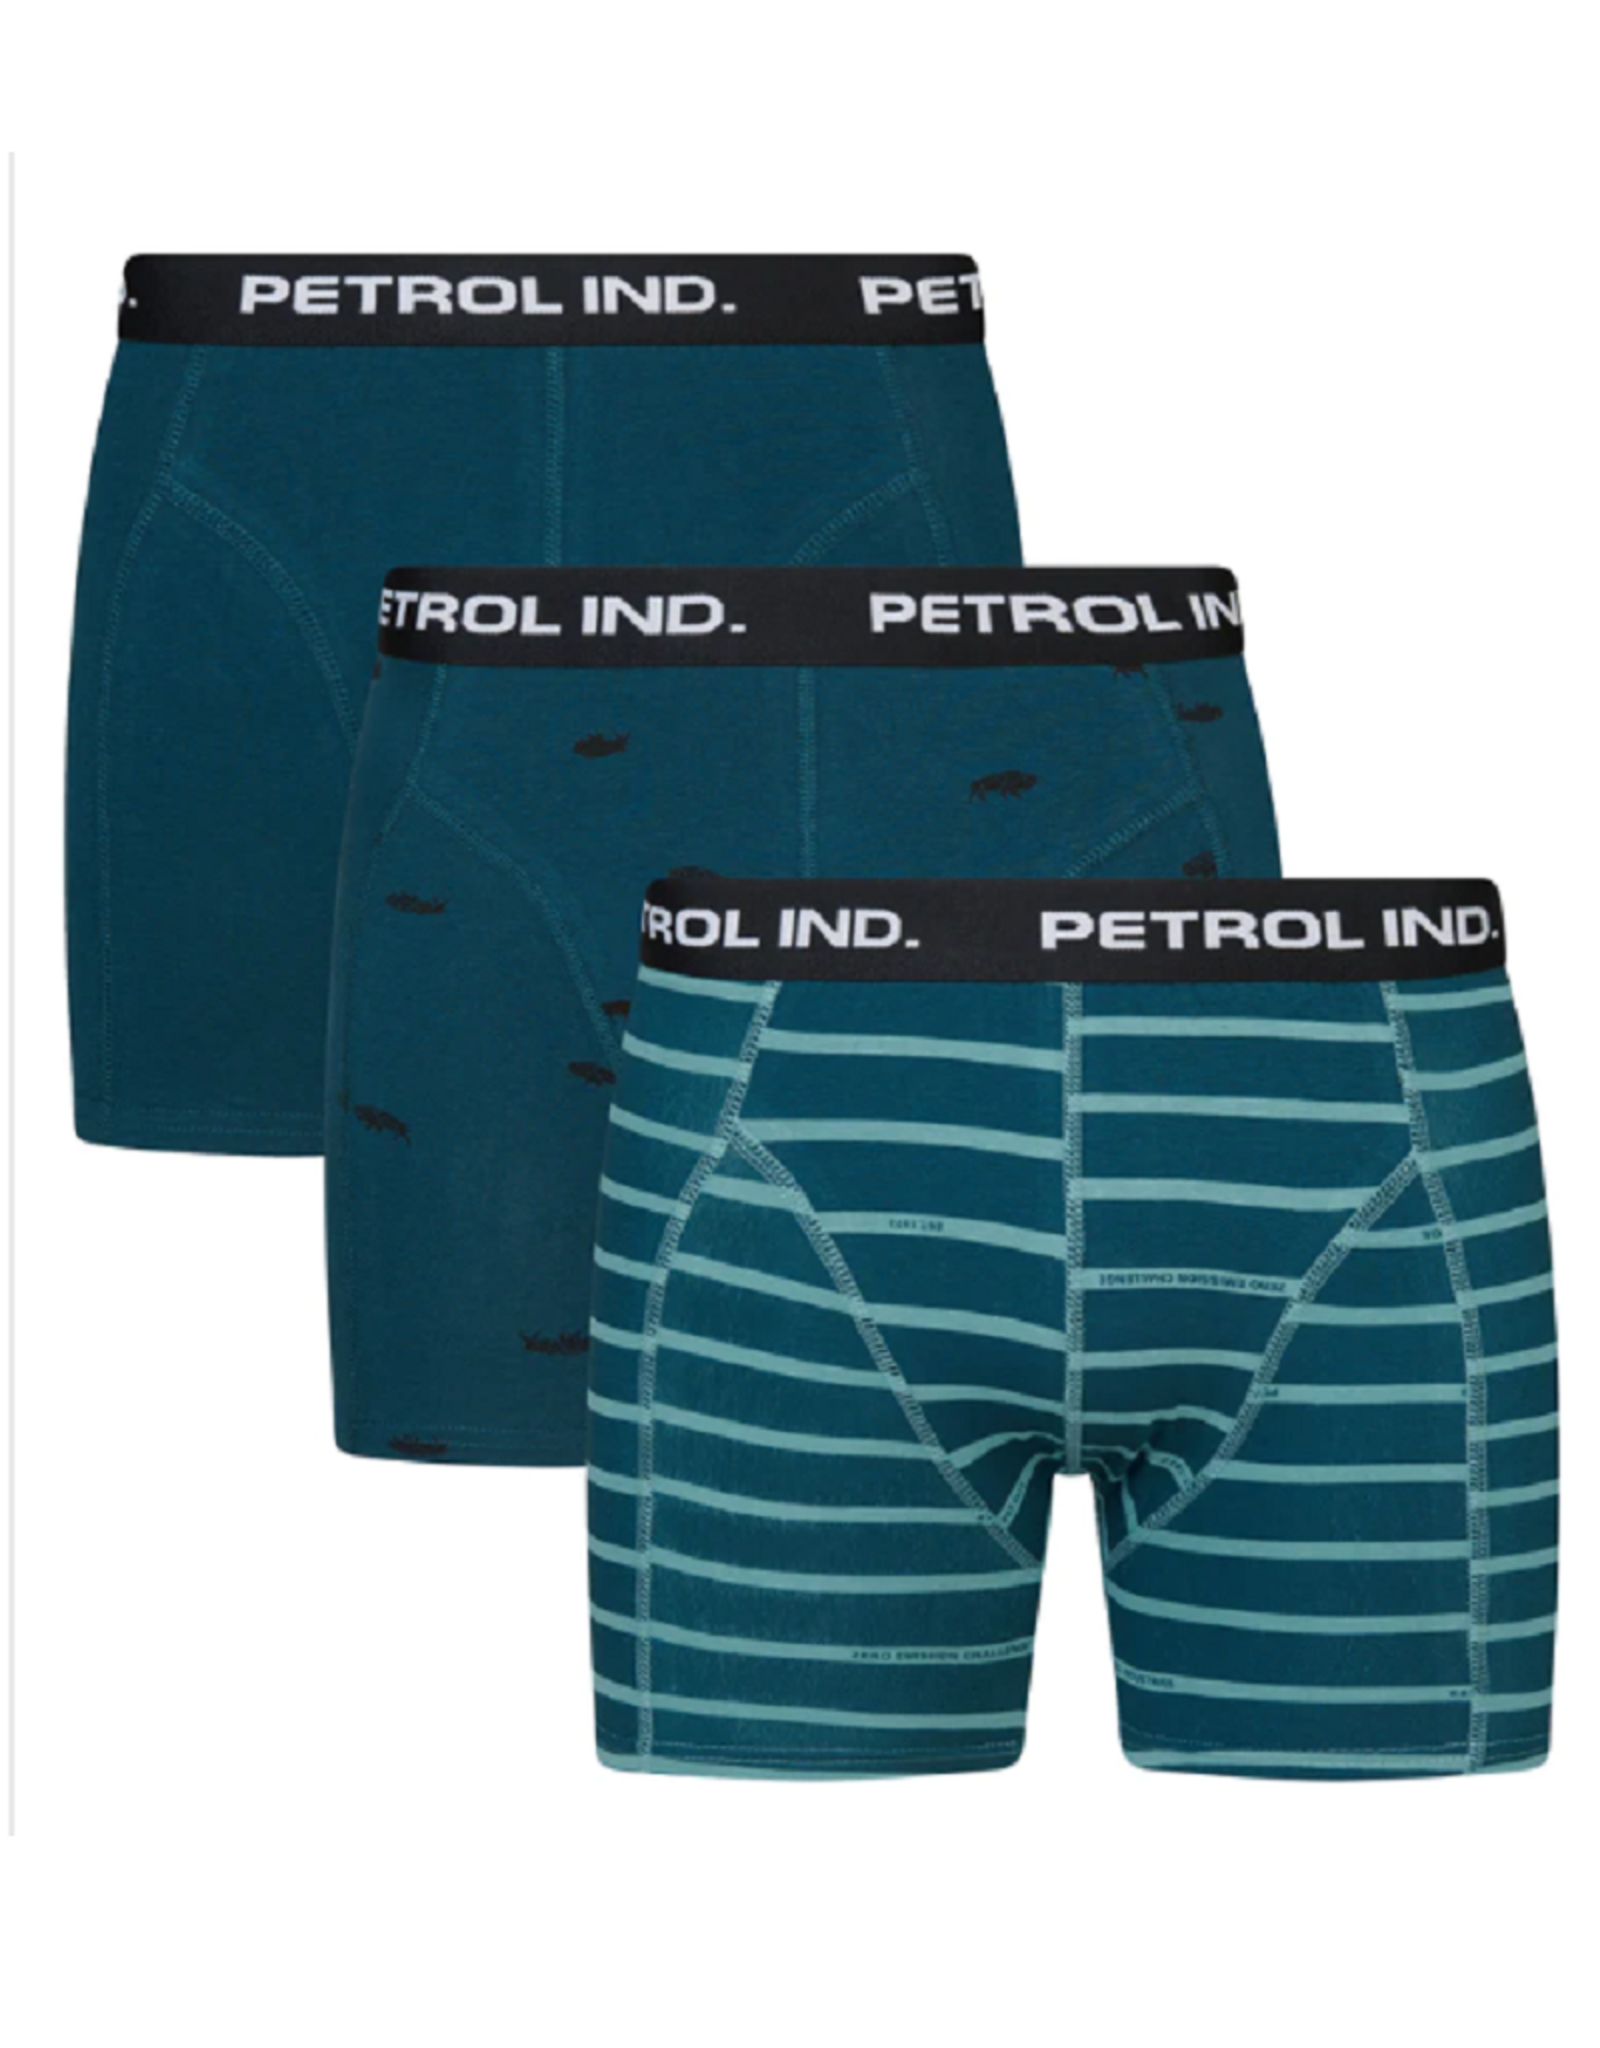 Petrol Ind. Petrol Industries boxersshorts 3-pack groen